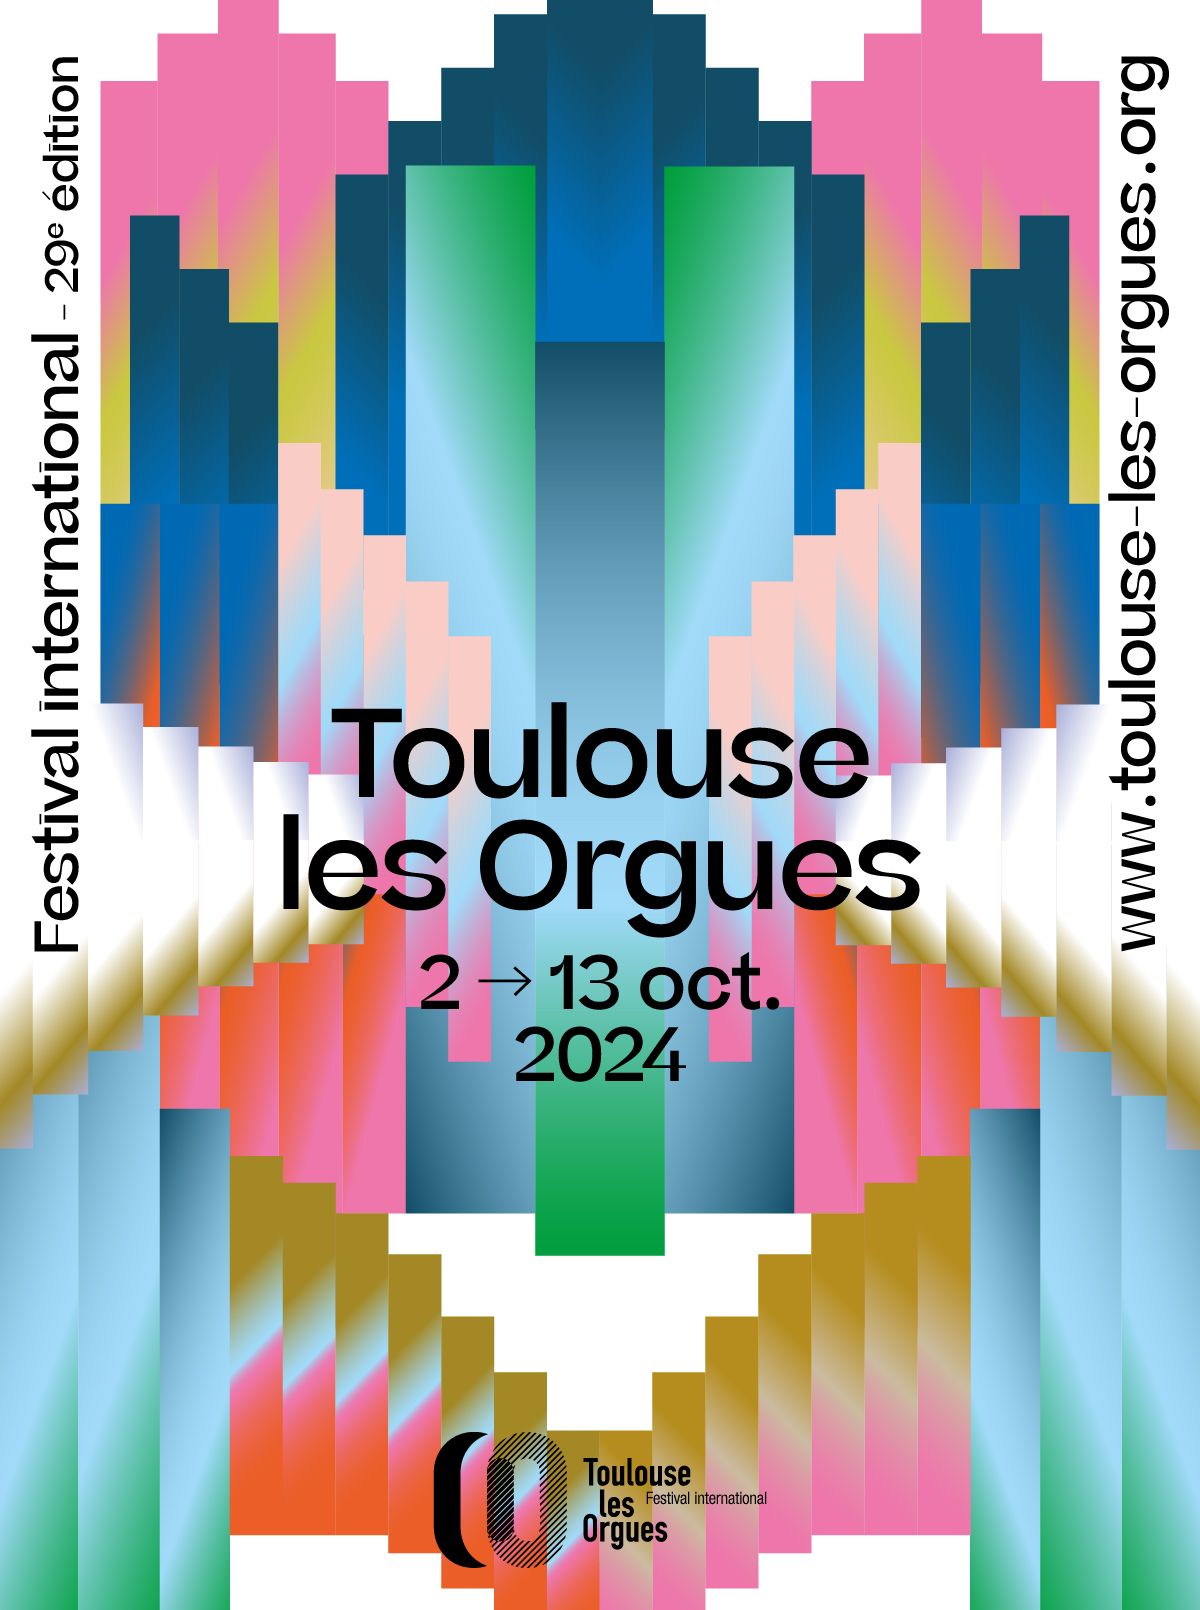 Toulouse Les Orgues 2024